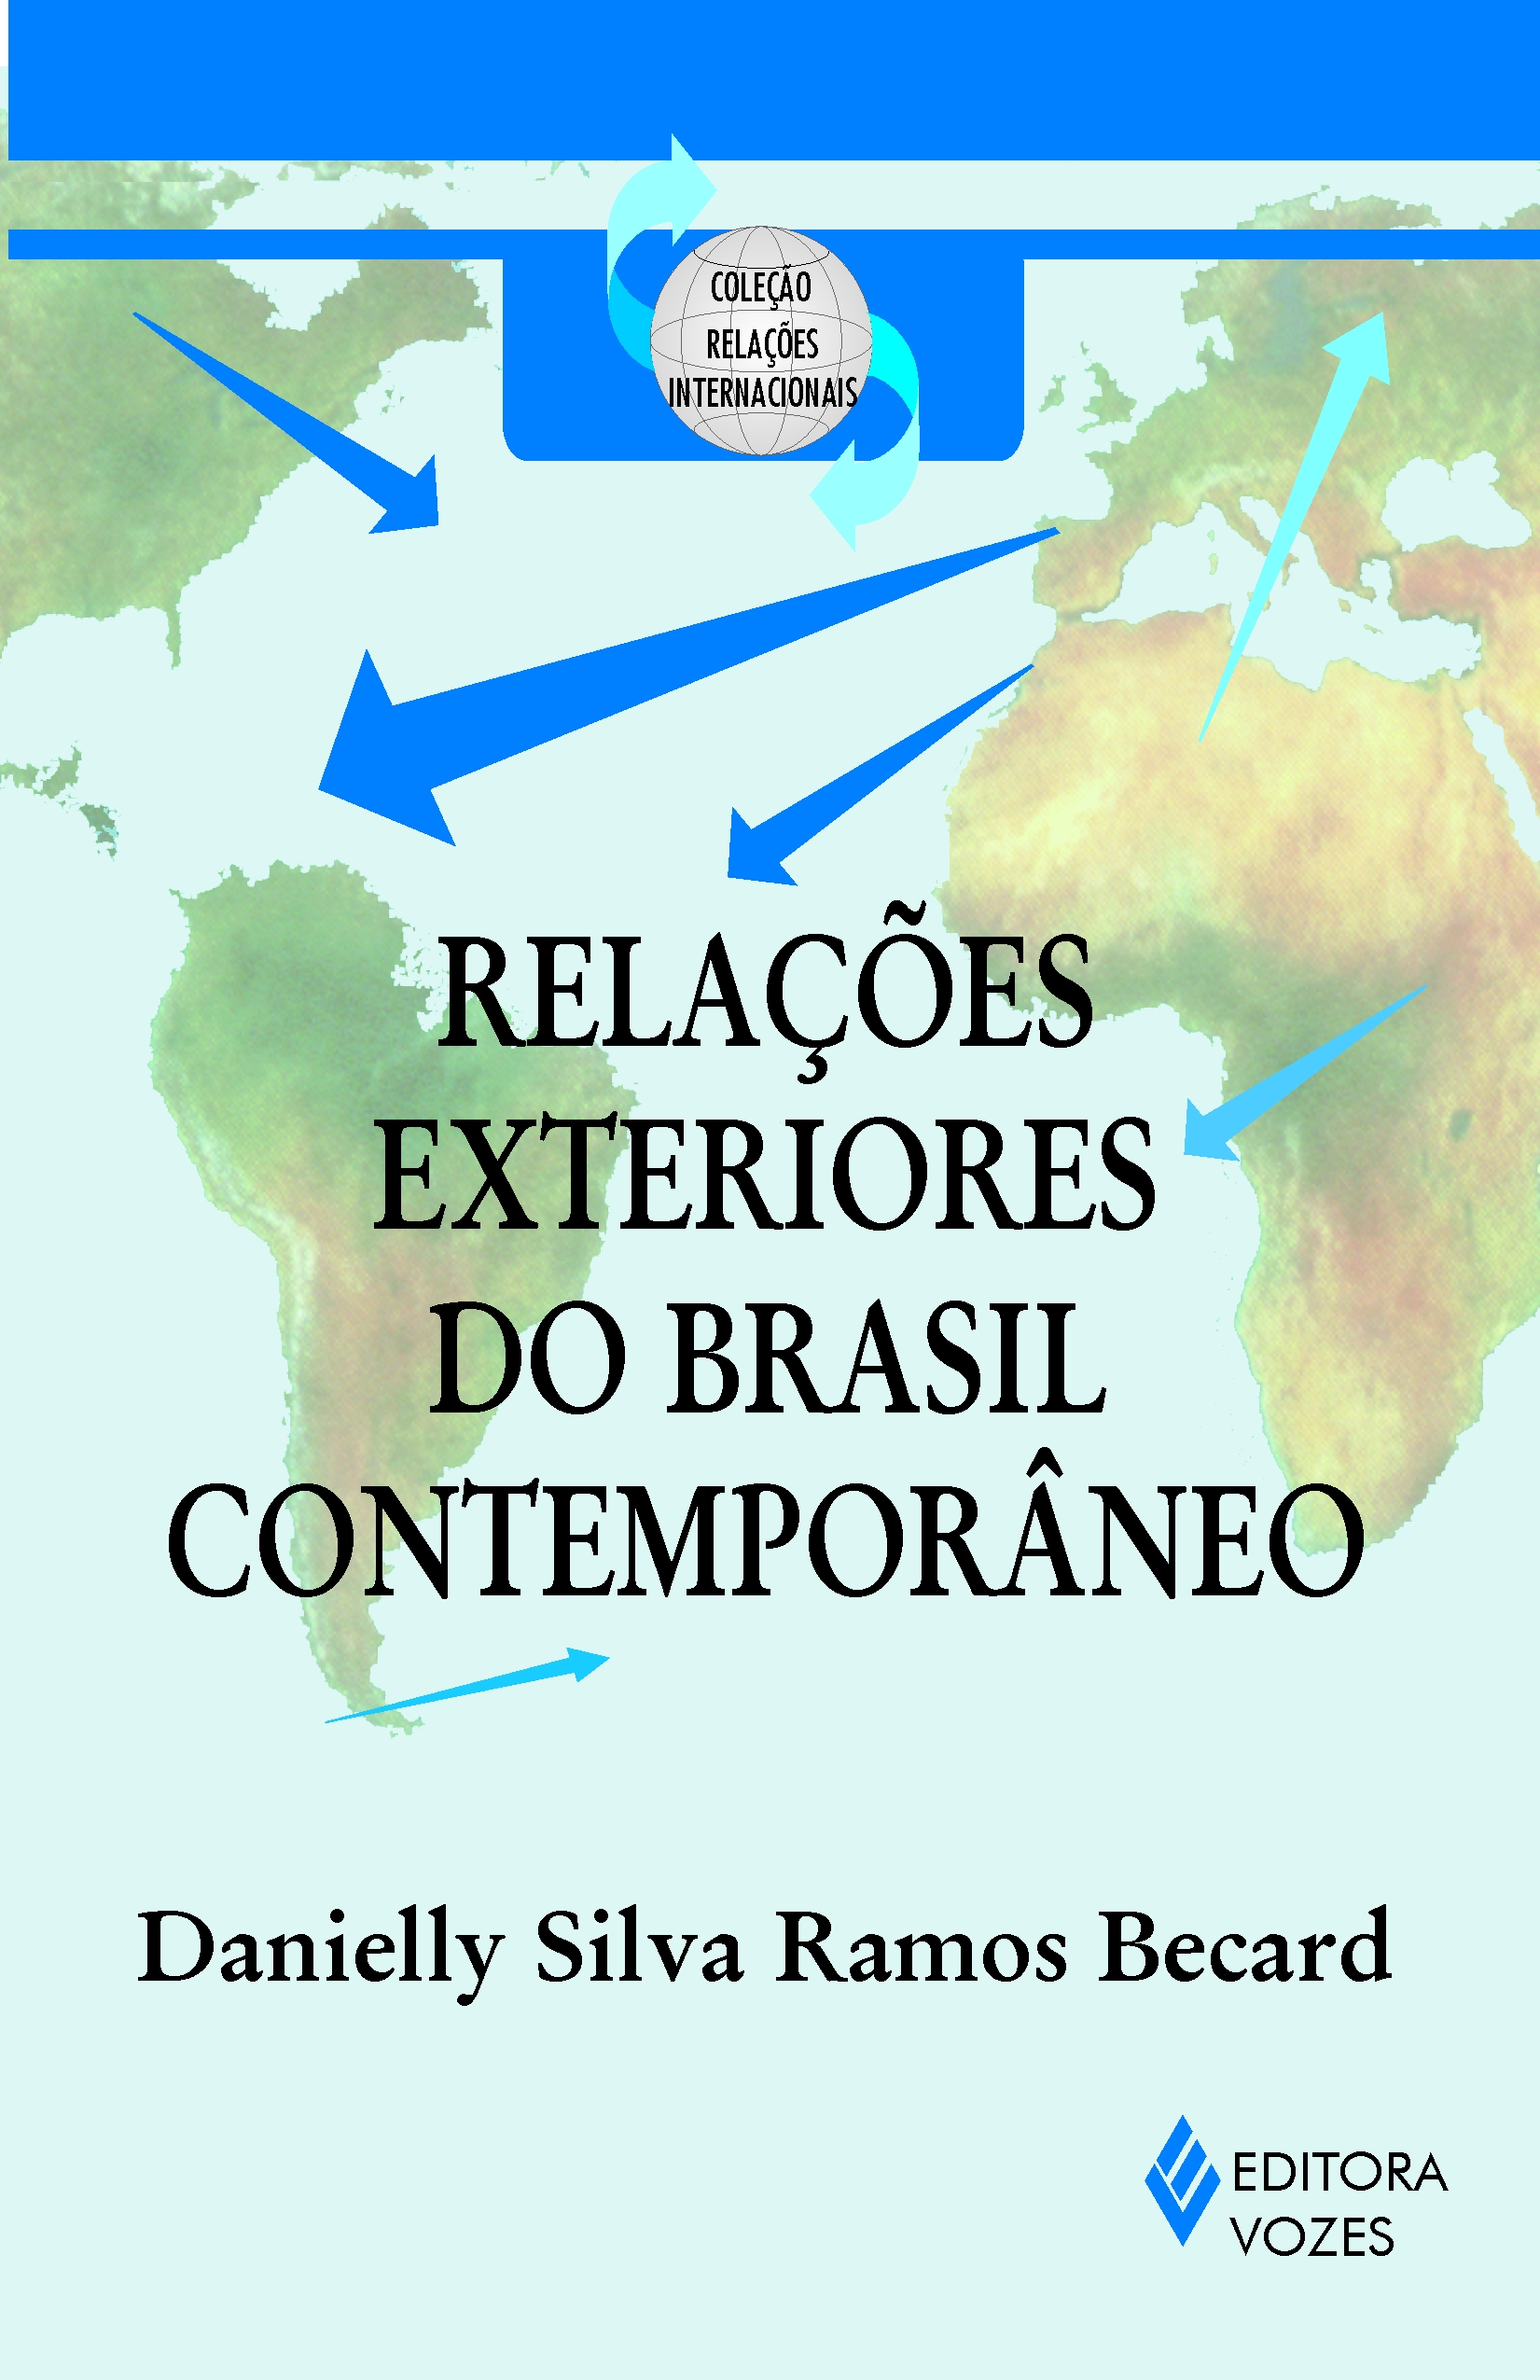 Relações Exteriores do Brasil Contemporâneo